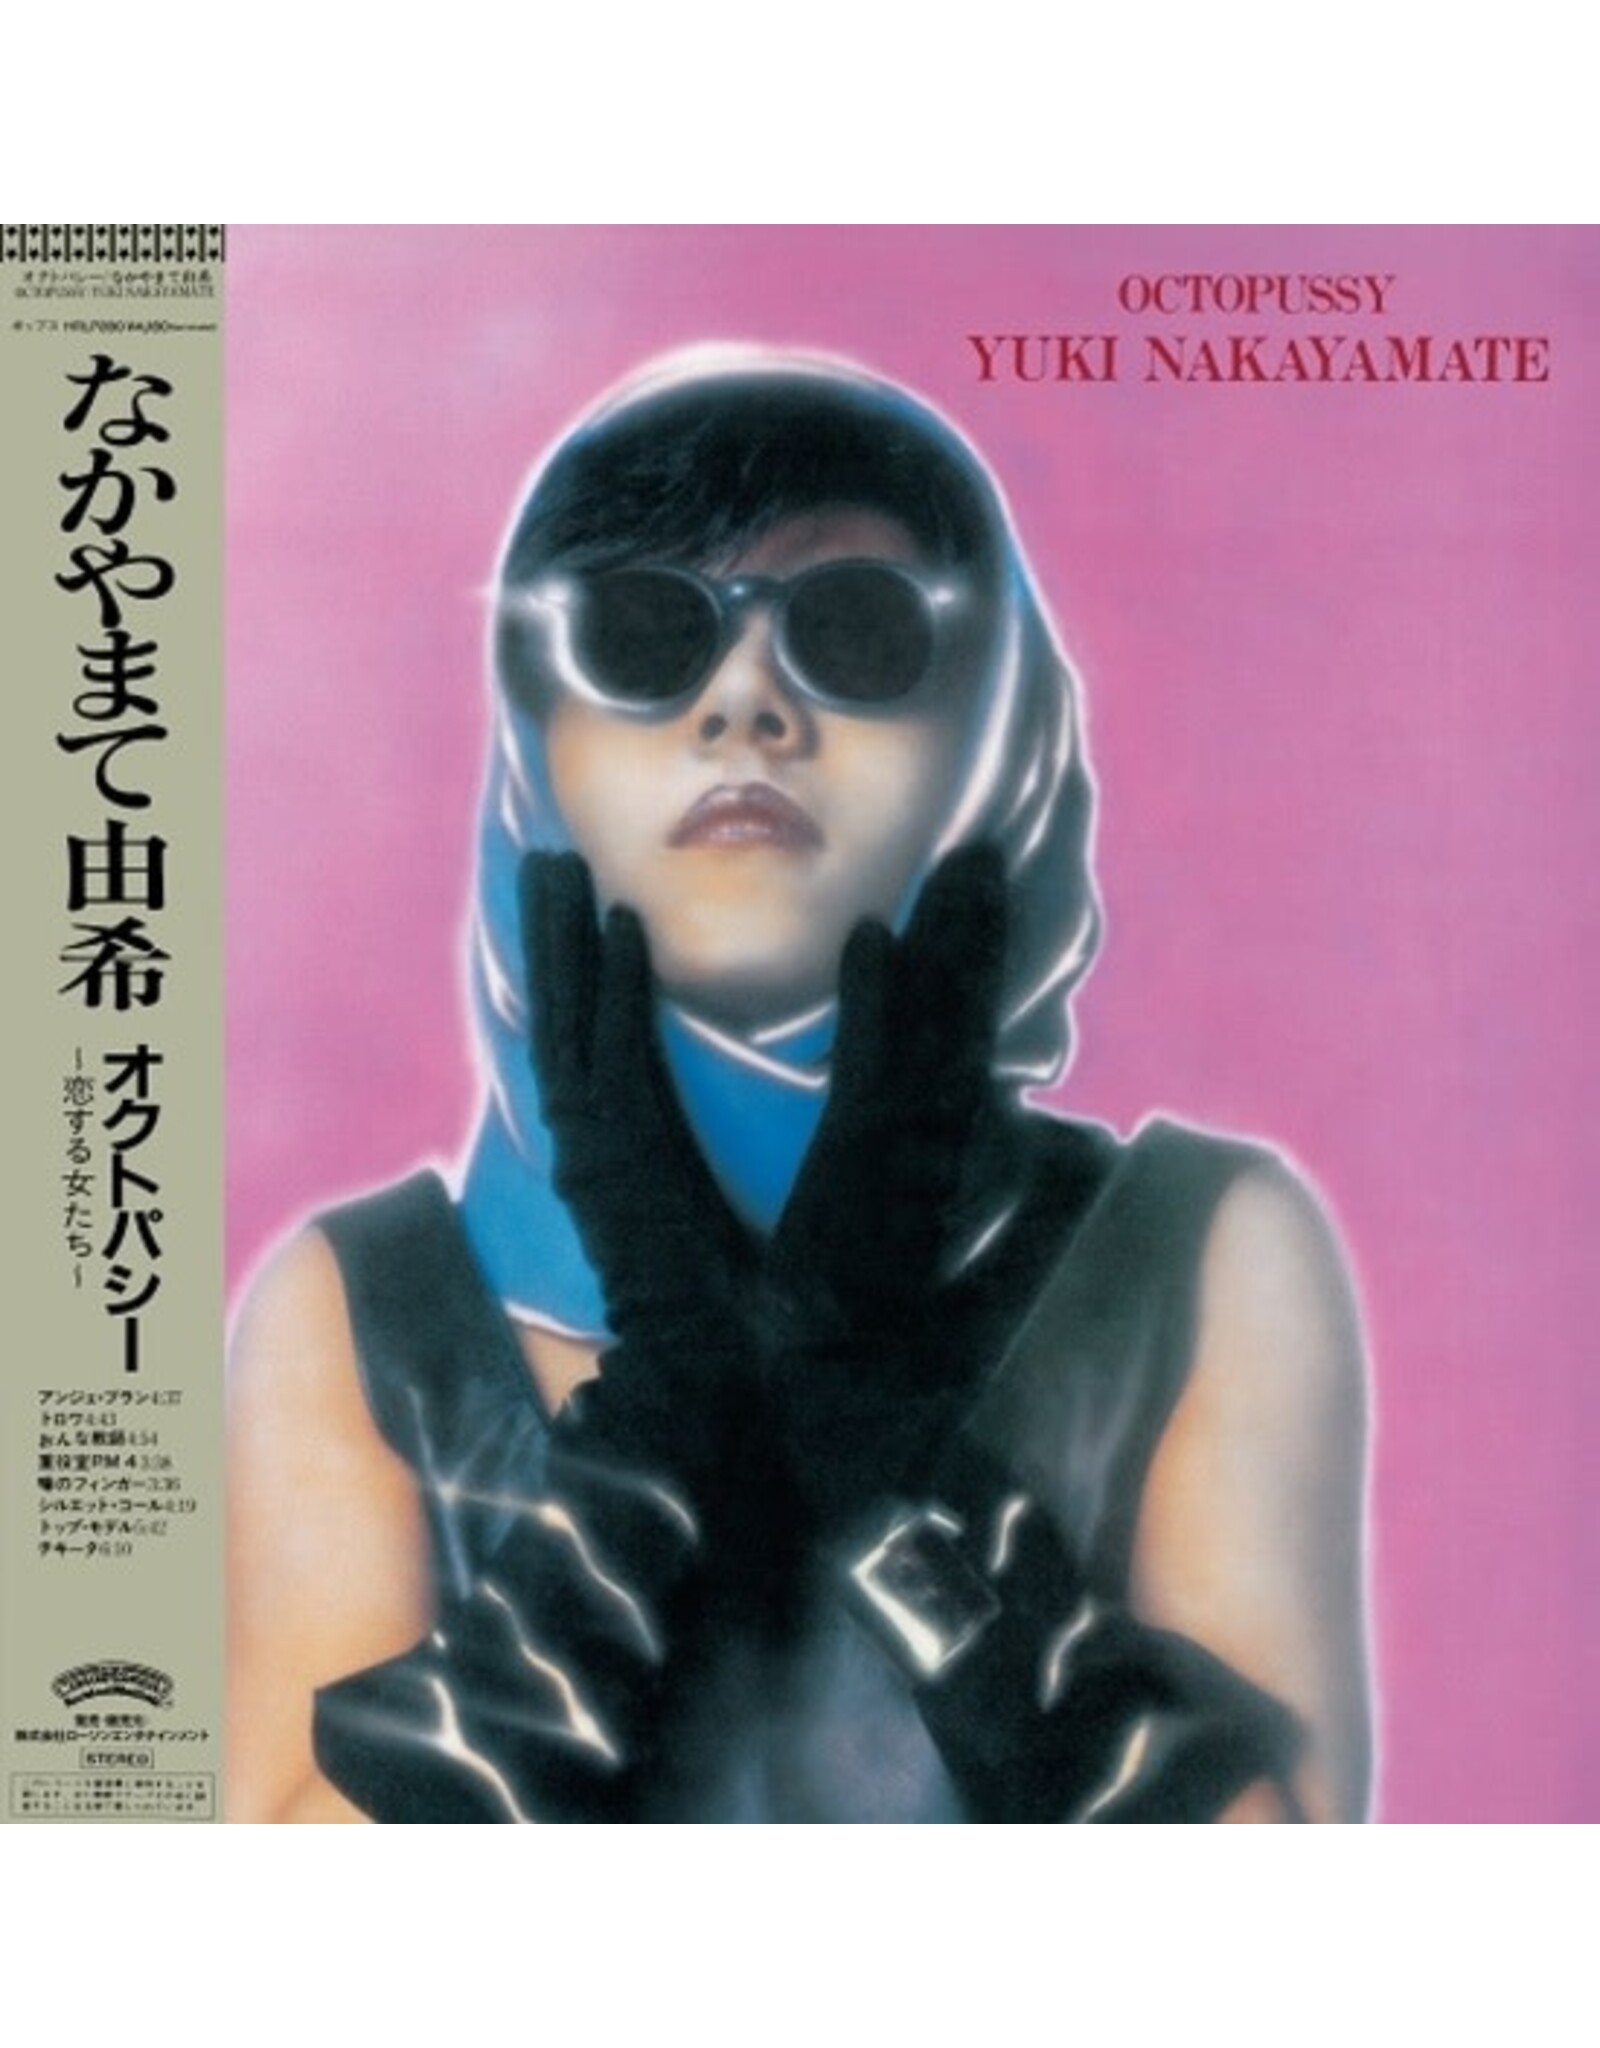 Nakayamate, Yuki: Octopussy LP